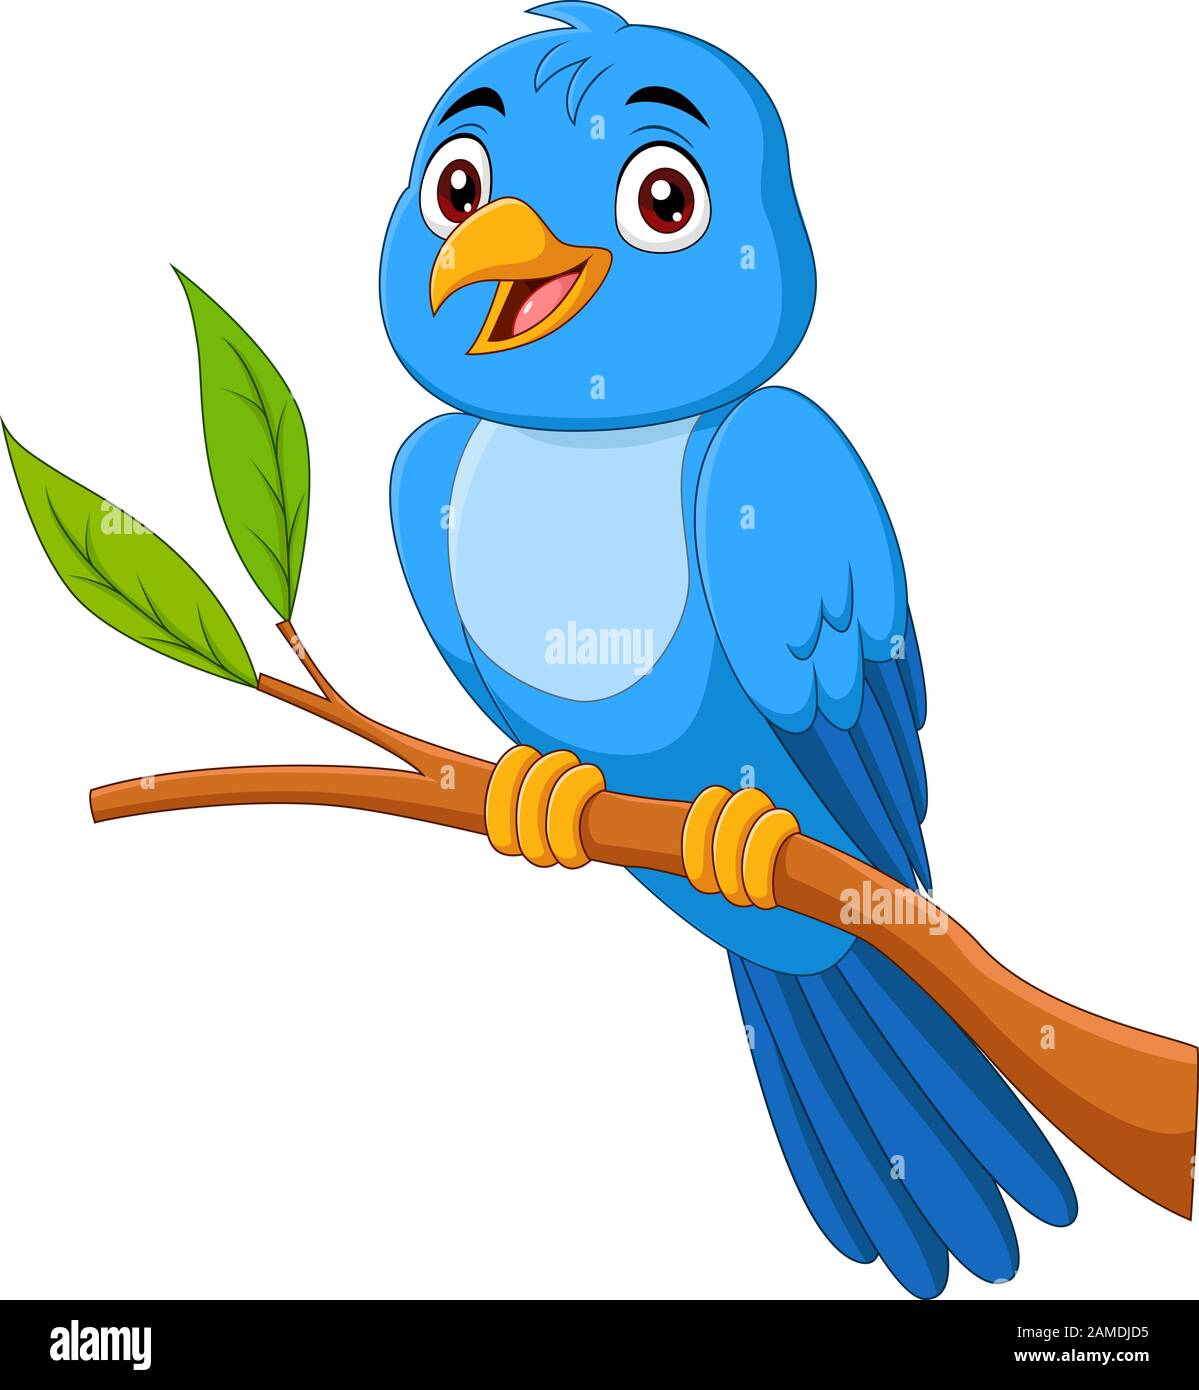 Oiseau bleu de dessin animé assis sur la branche de l'arbre Illustration de Vecteur